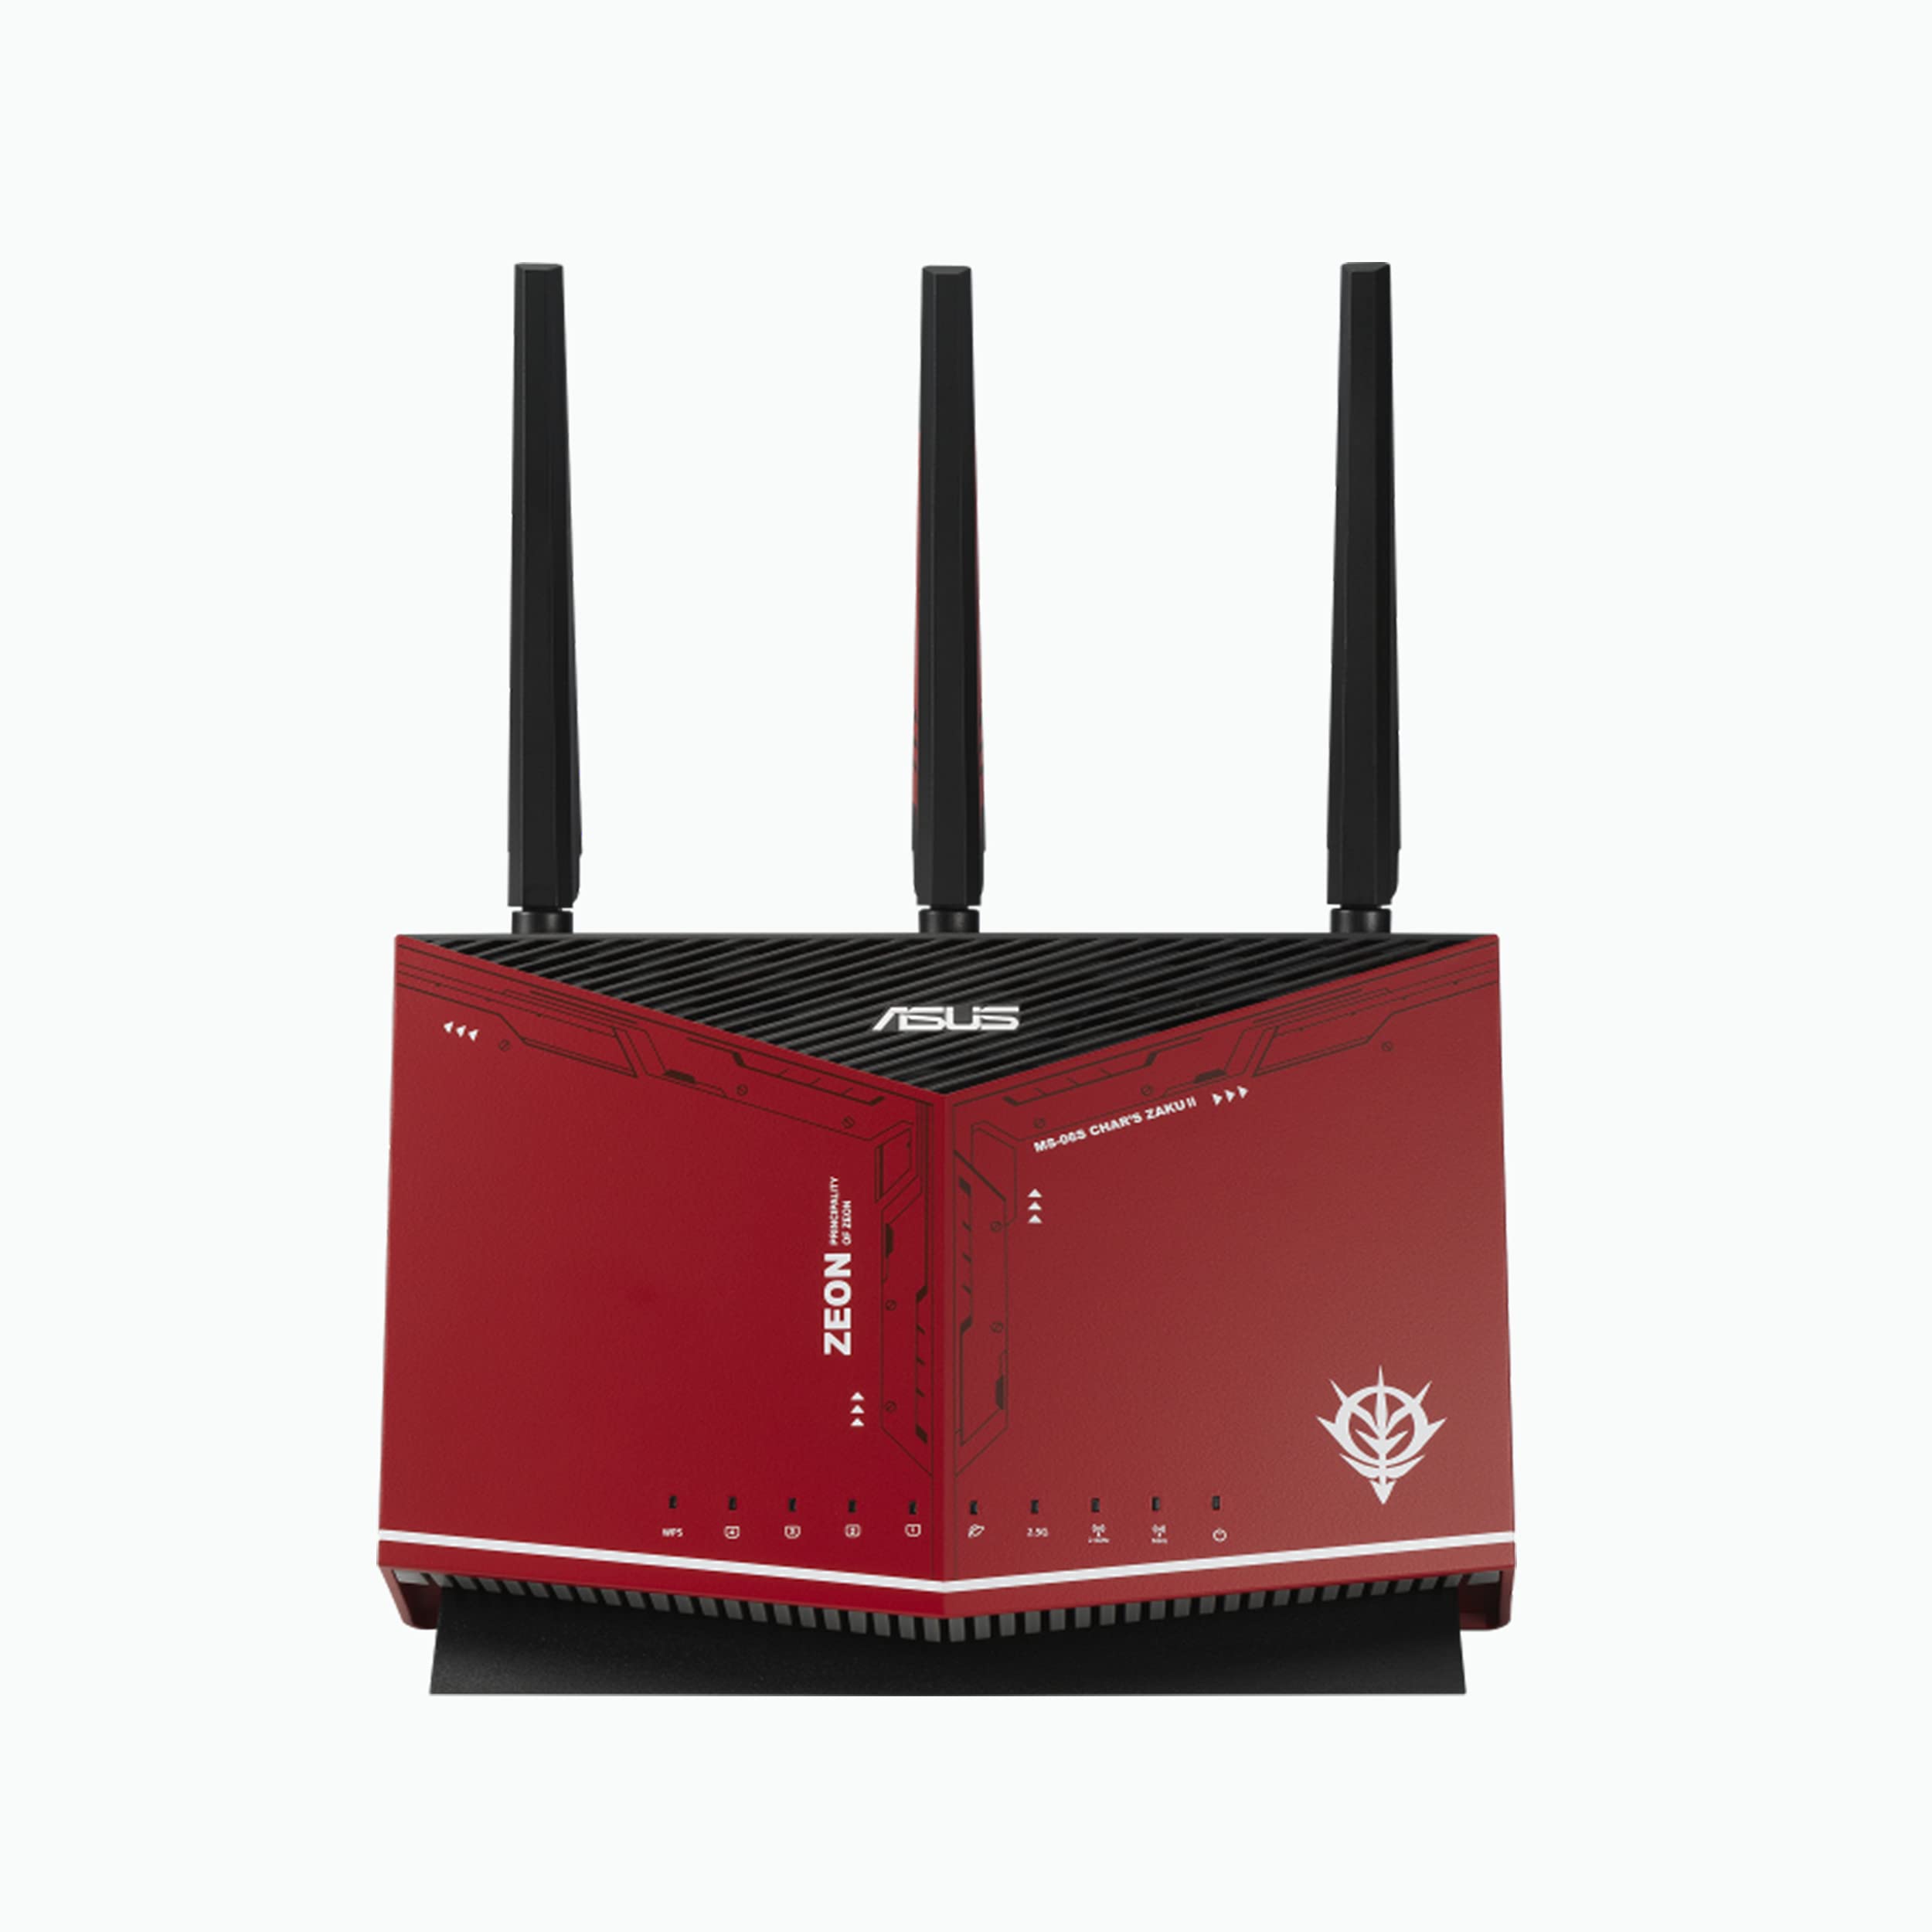 Asus AX5700 WiFi 6 游戏路由器 (RT-AX86U) - 双频千兆无线互联网路由器